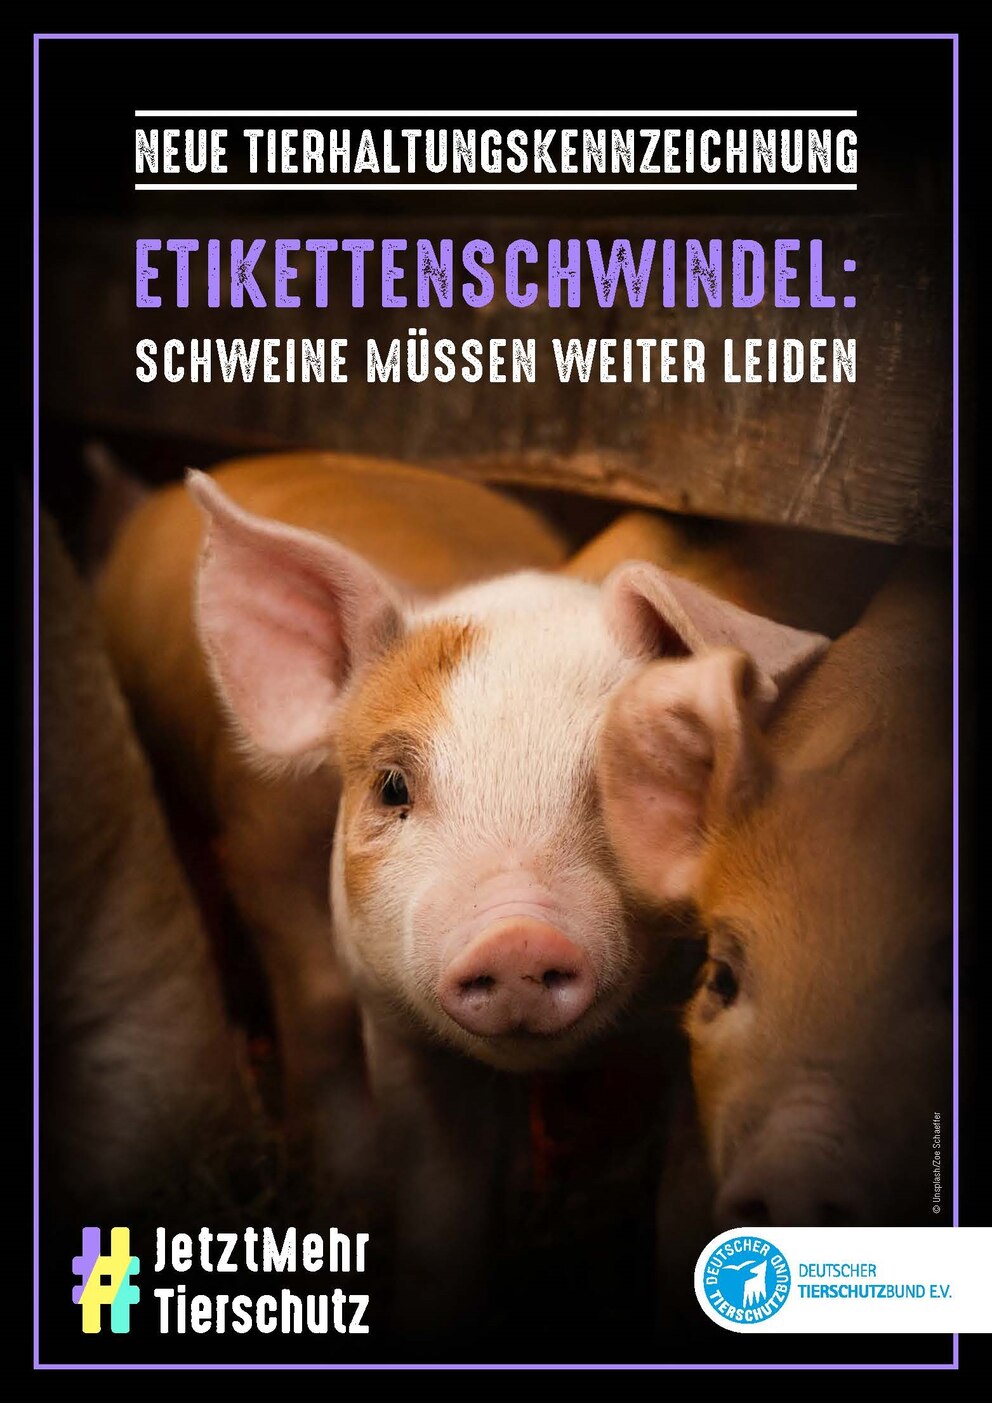 Mit dem Motiv „Etikettenschwindel: Schweine müssen weiter leiden“ weist der Deutsche Tierschutzbund auf die unzureichende Tierhaltungskennzeichnung hin